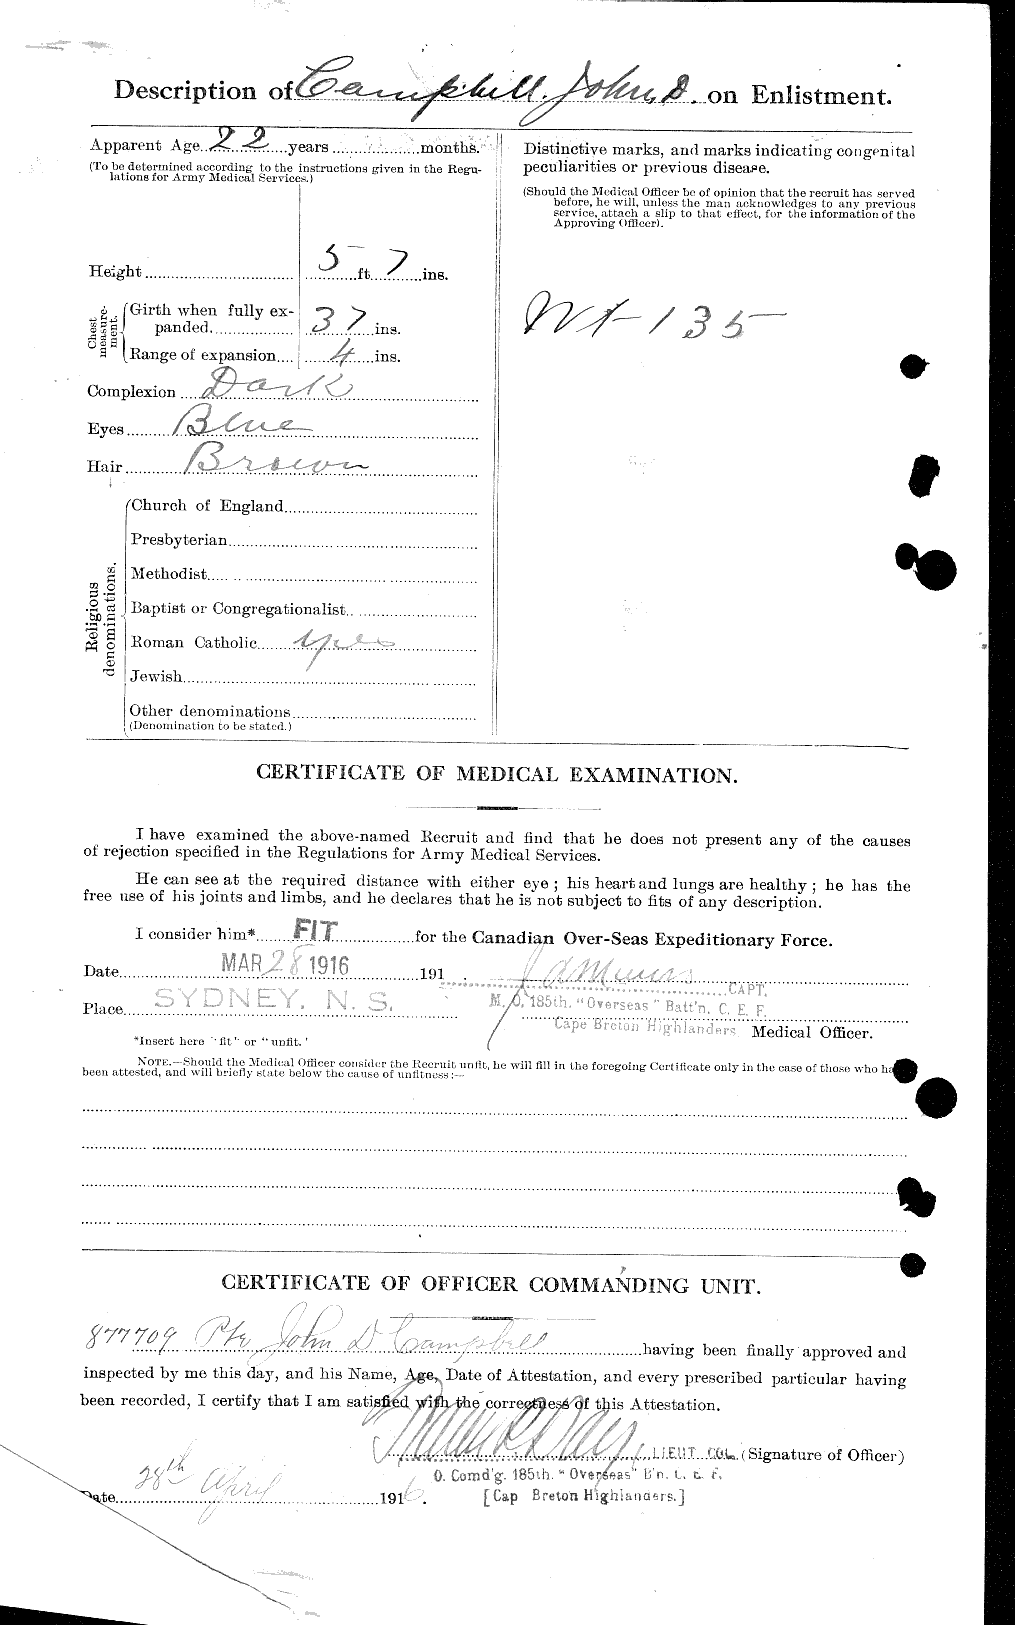 Dossiers du Personnel de la Première Guerre mondiale - CEC 006886b